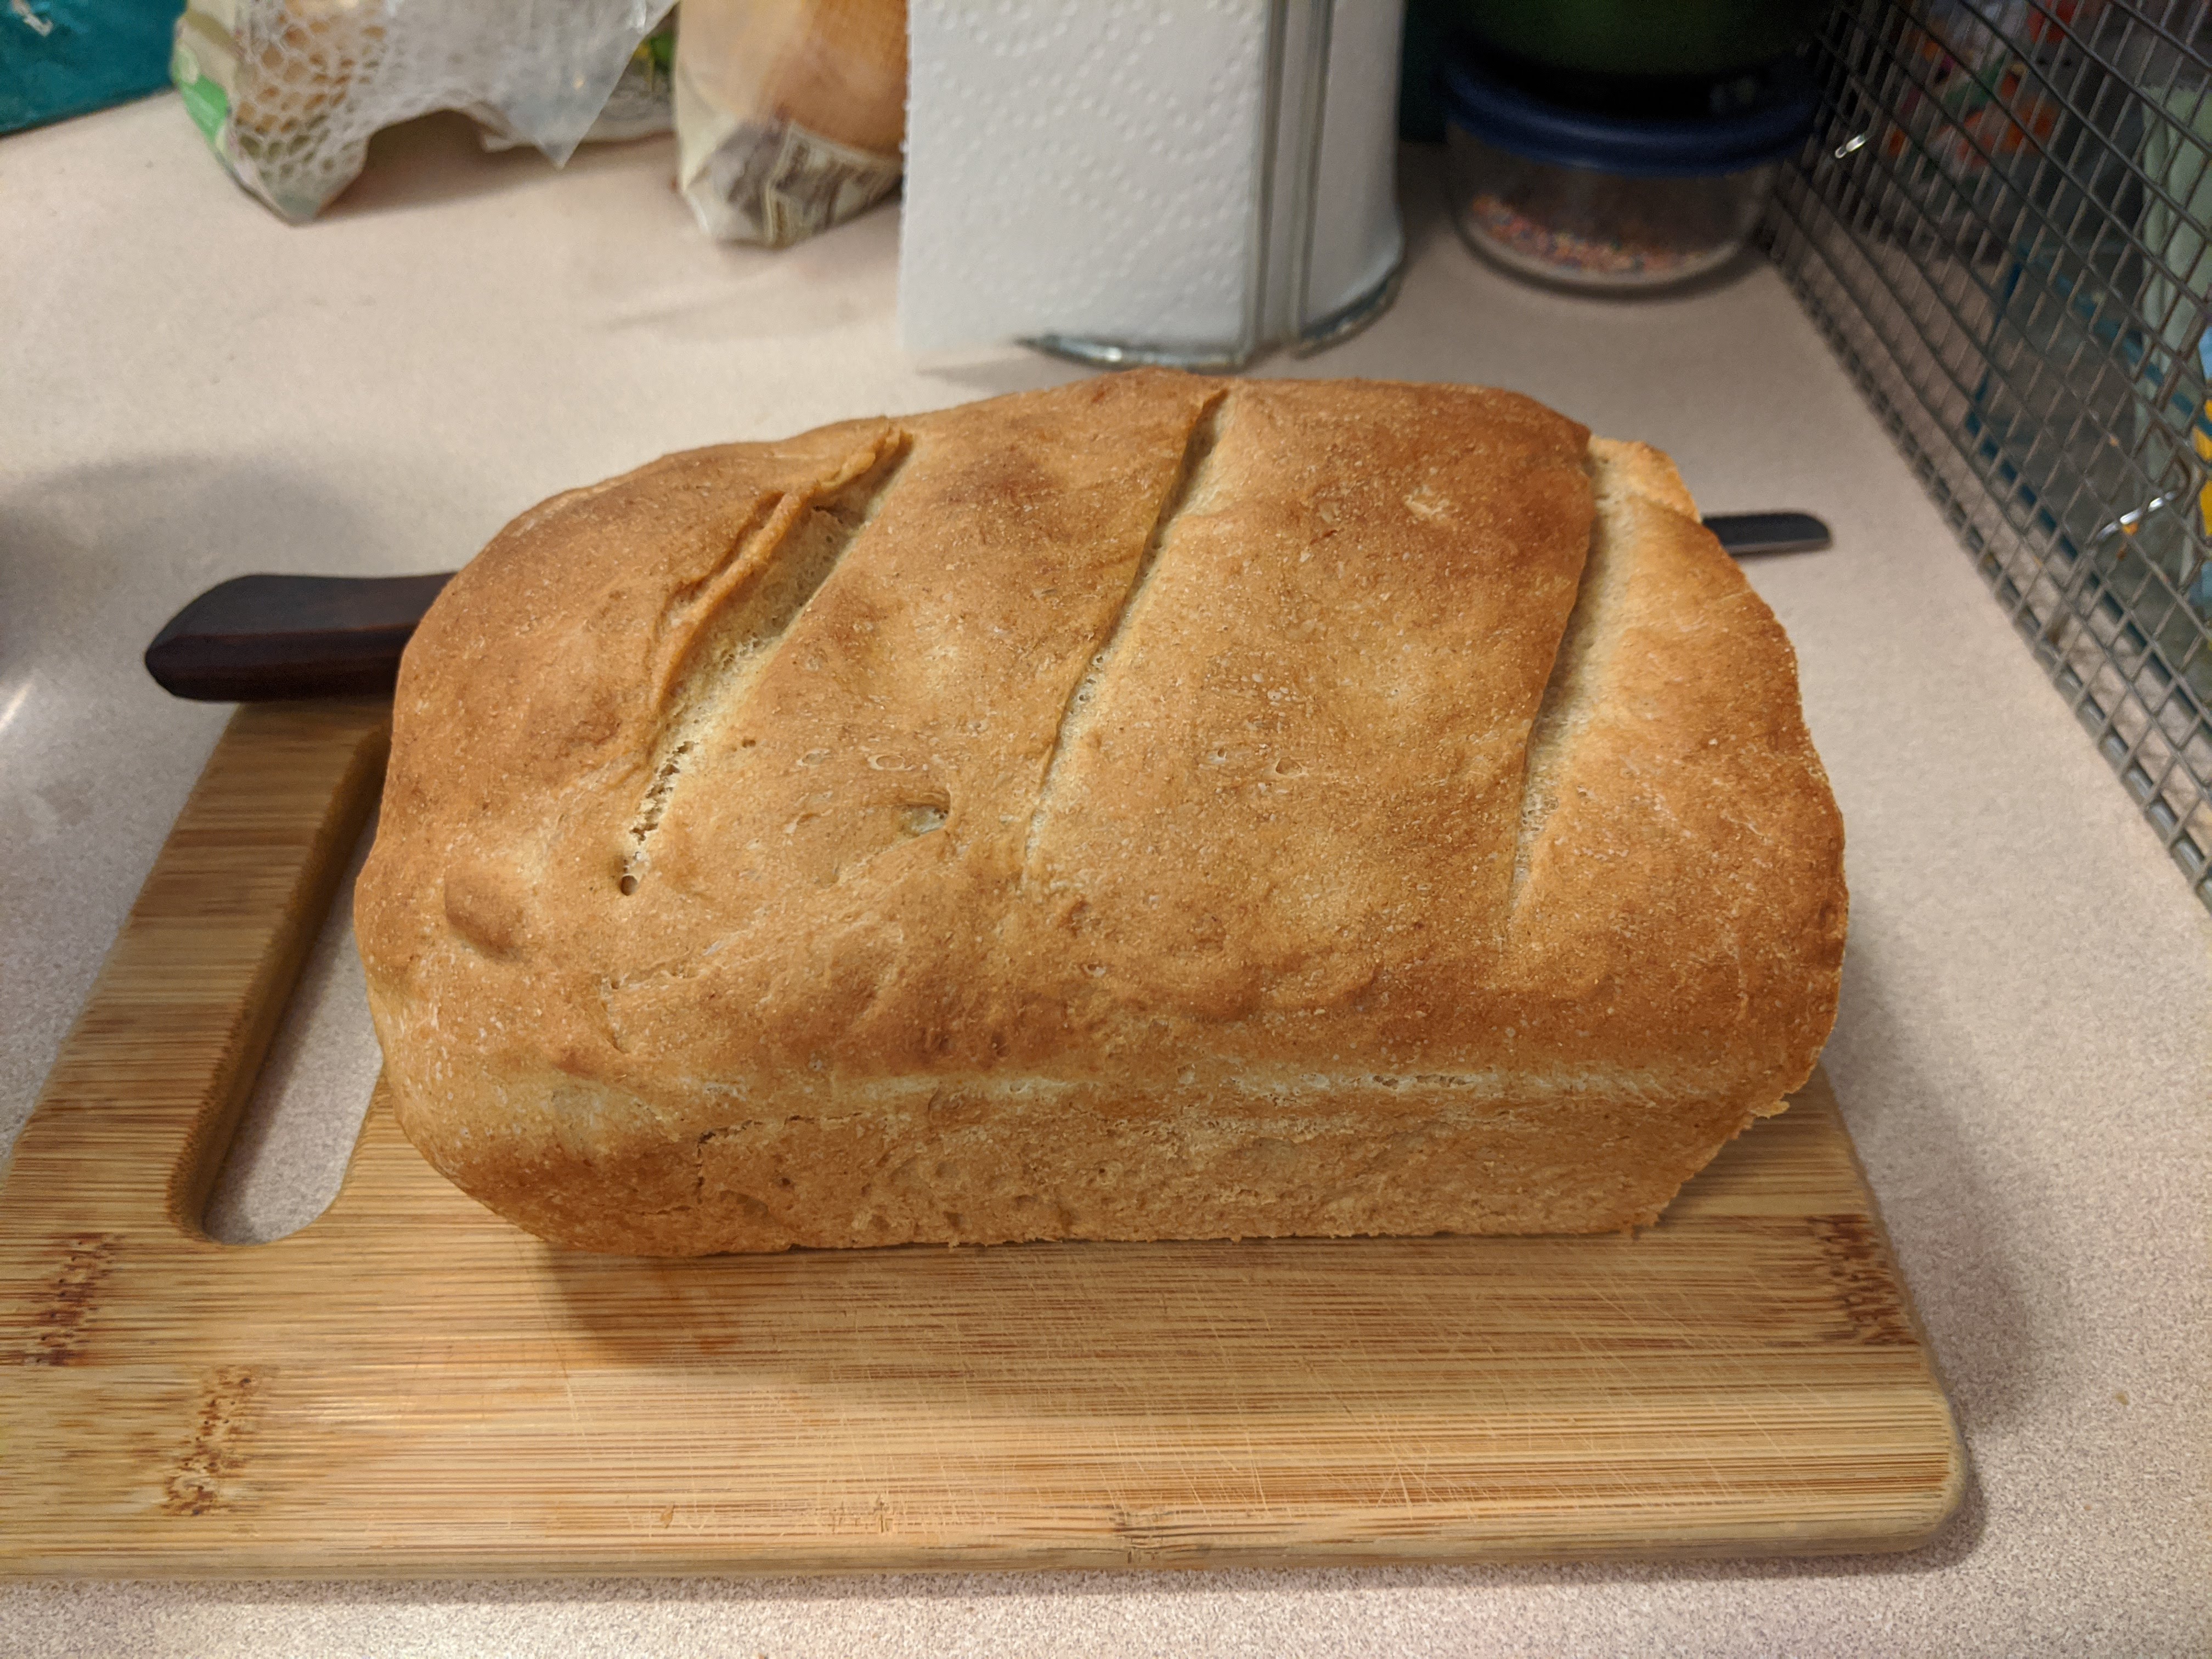 Cooled loaf